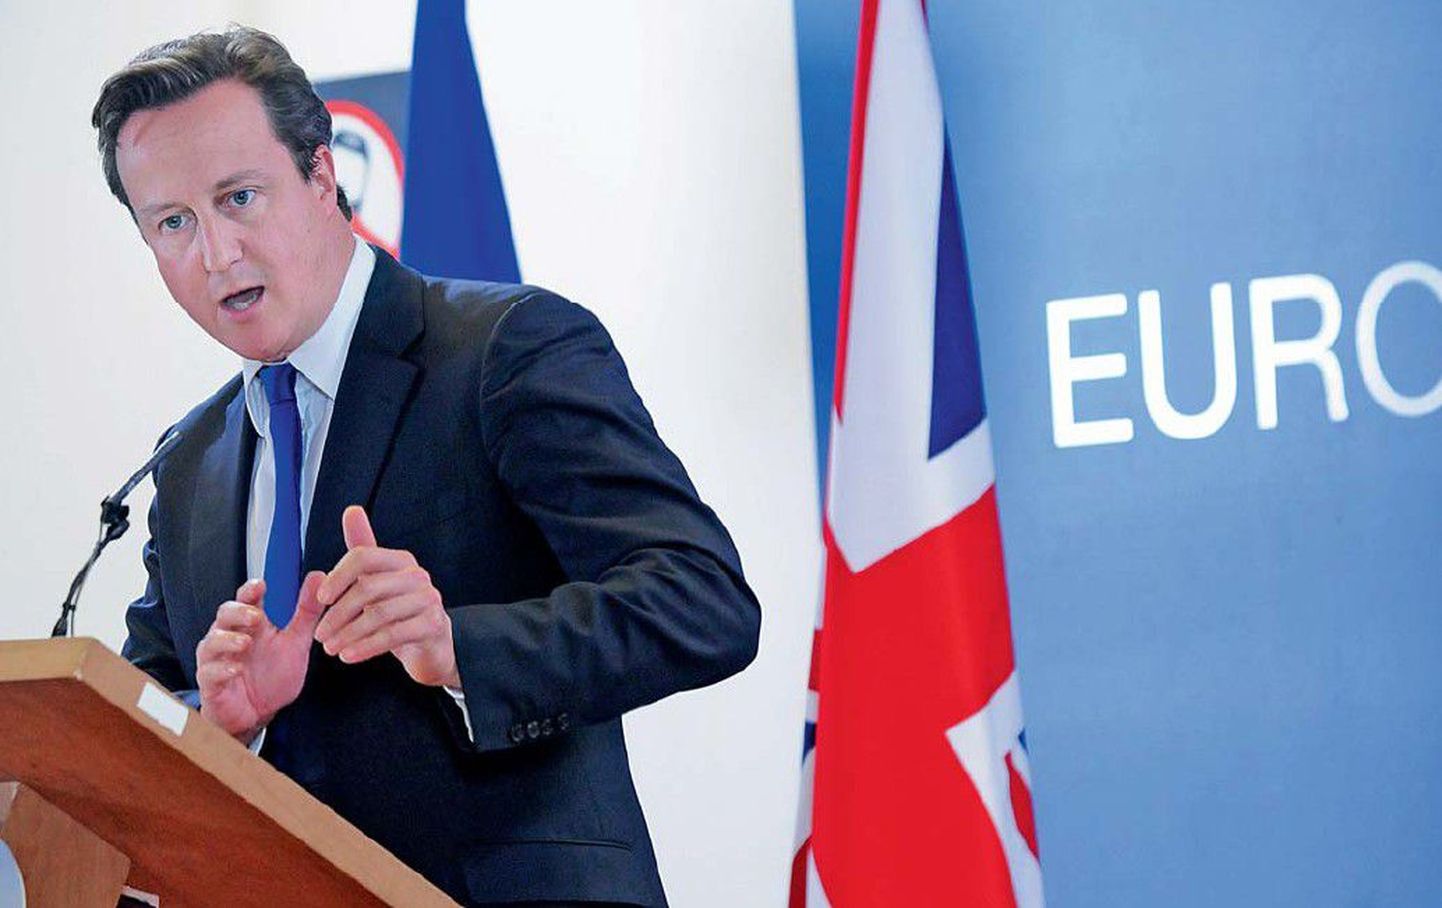 Briti peaminister David Cameron nõudis euroalalt kiireid otsuseid, et kustutada Kreeka tulekahju.